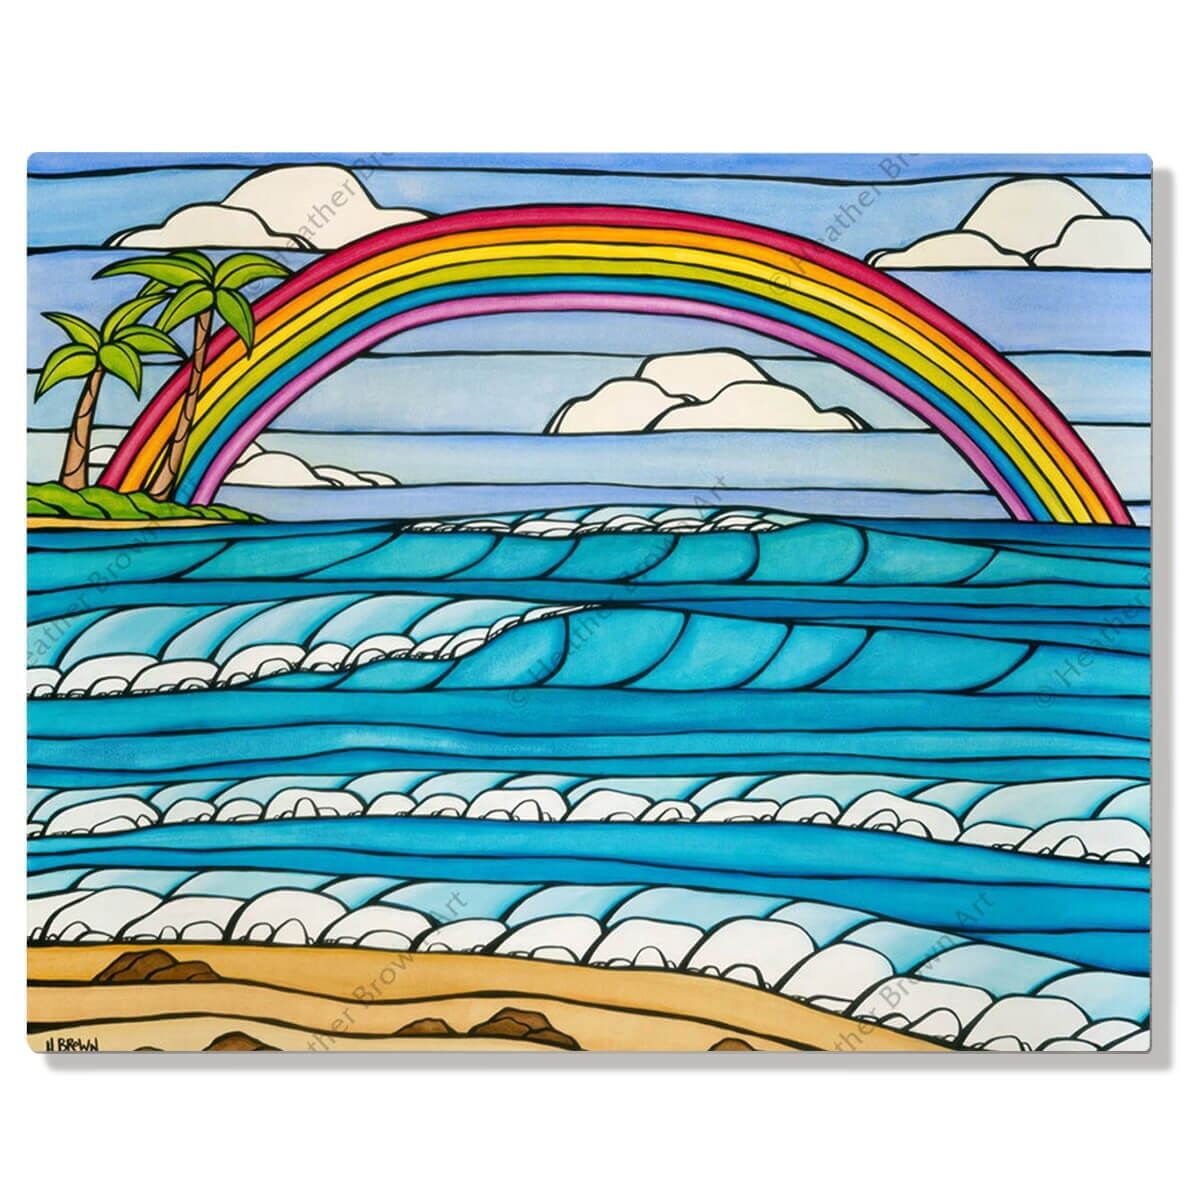 ヘザー・ブラウン『Daydream Rainbow』〈メタルプリント〉66,000円